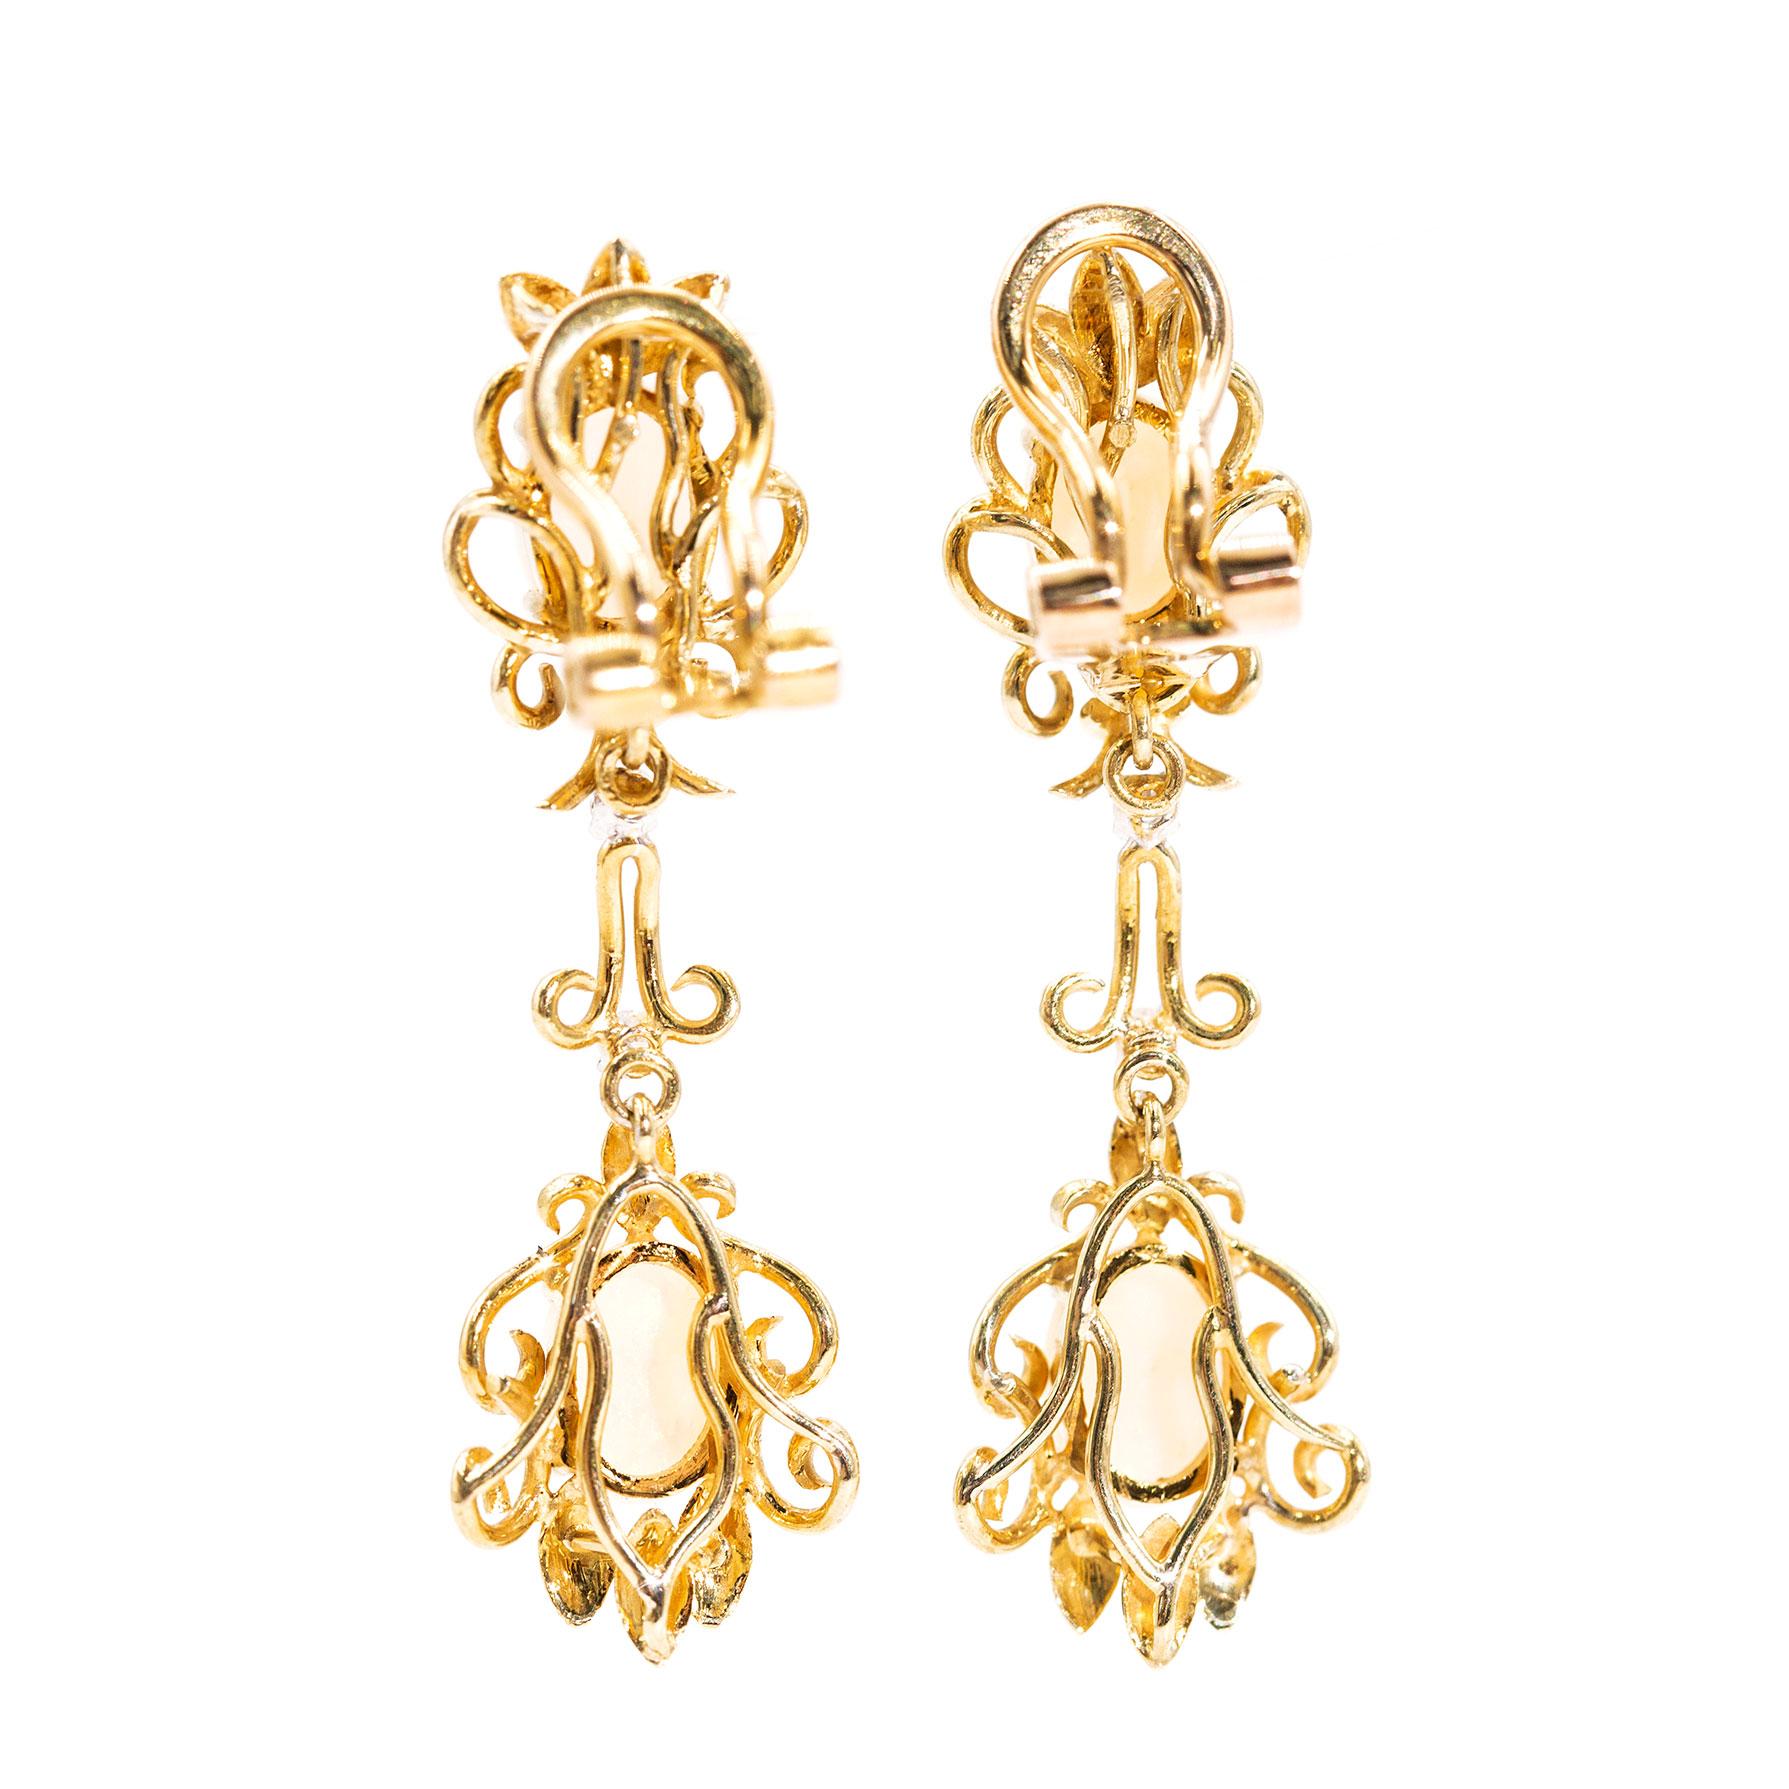 14 carat gold clip on earrings